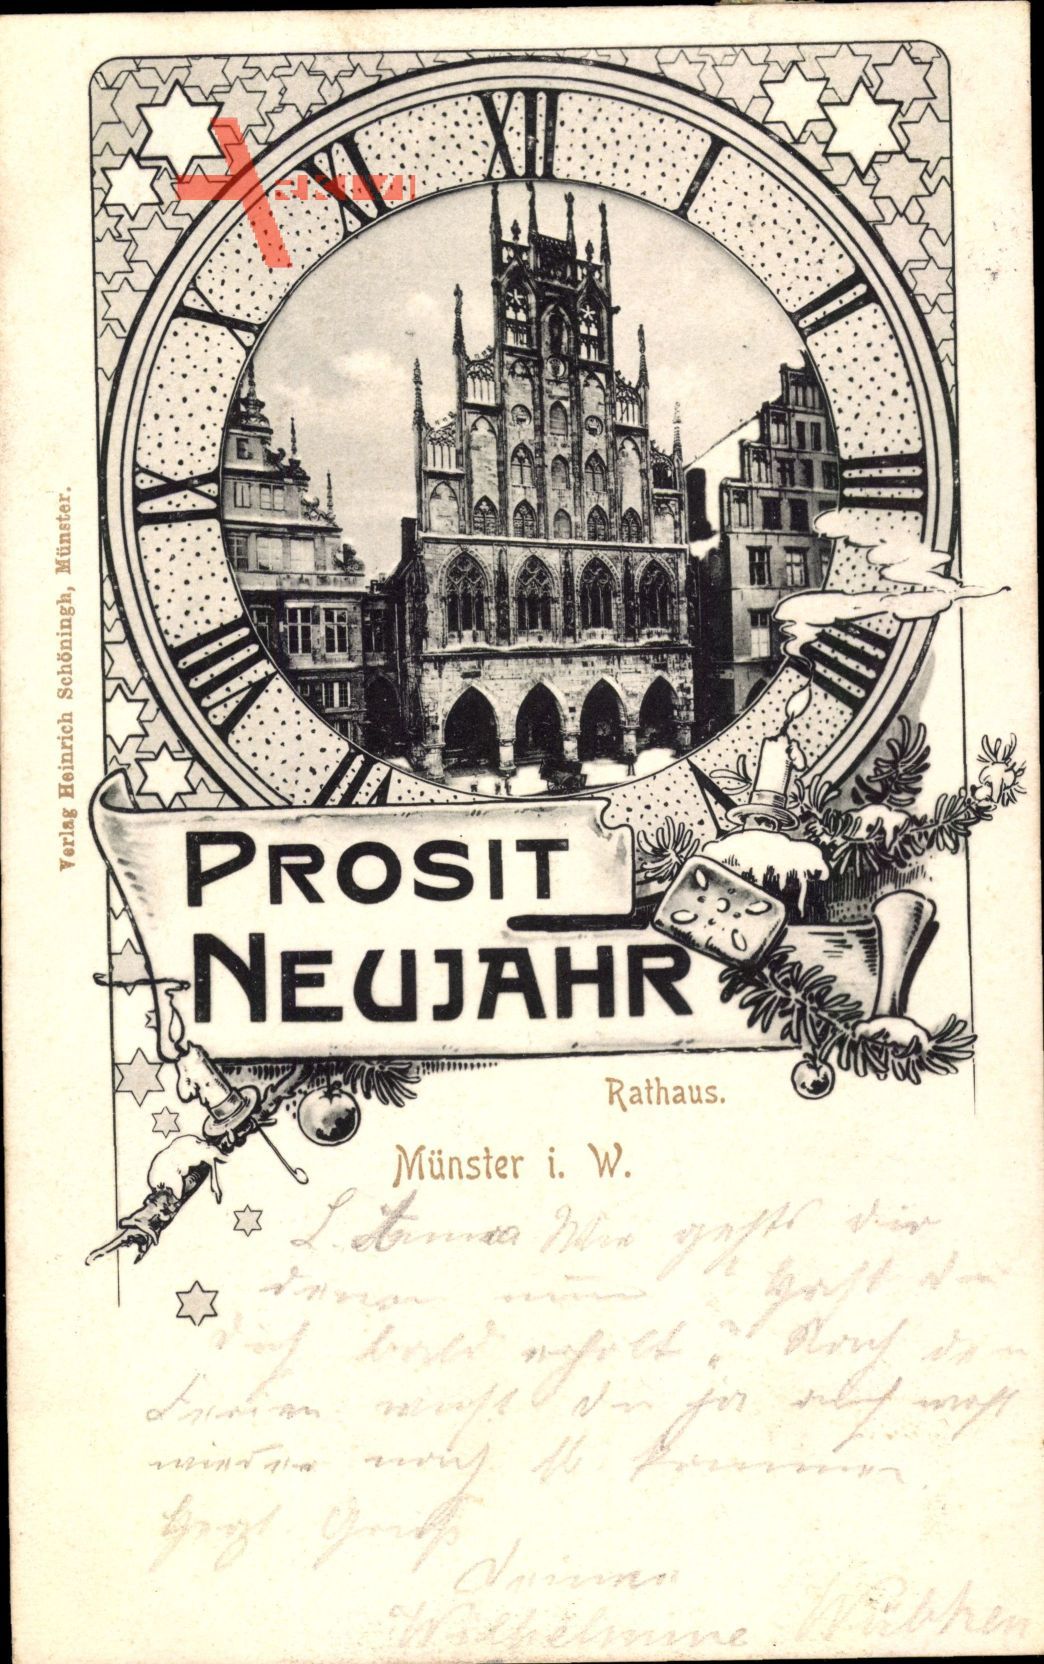 Münster in Westfalen, Blick auf Rathaus, Prosit Neujahr, Ziffernblatt